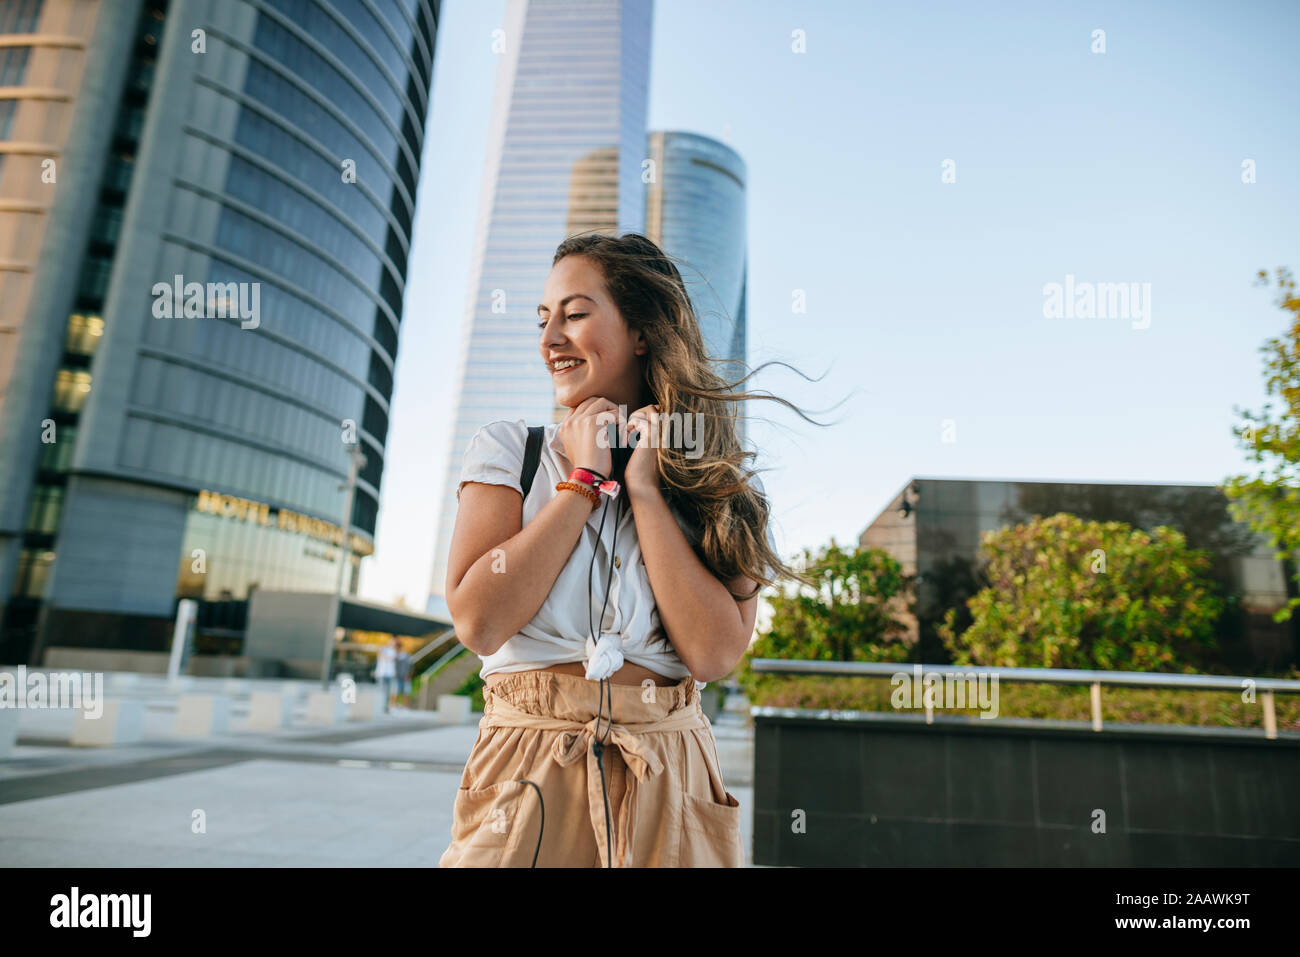 Giovane Donna con cuffie attorno al collo, grattacieli in background Foto Stock